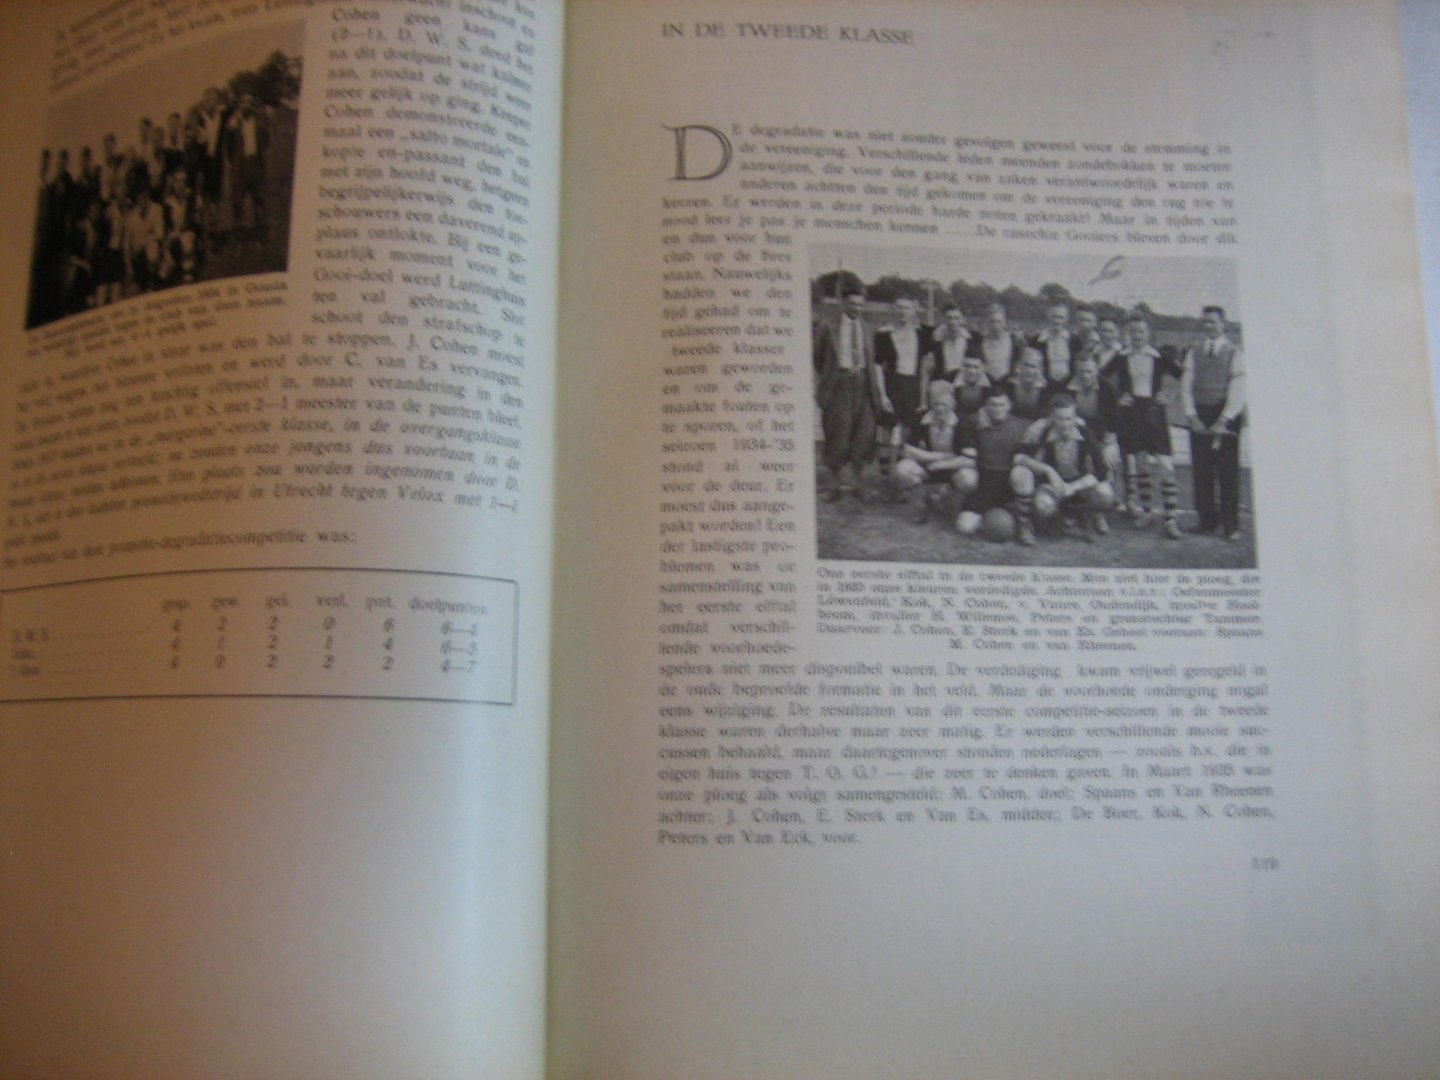  - Veertig jaren lief en leed in de Hilversche voetbalvereeniging "t Gooi   1905-1945